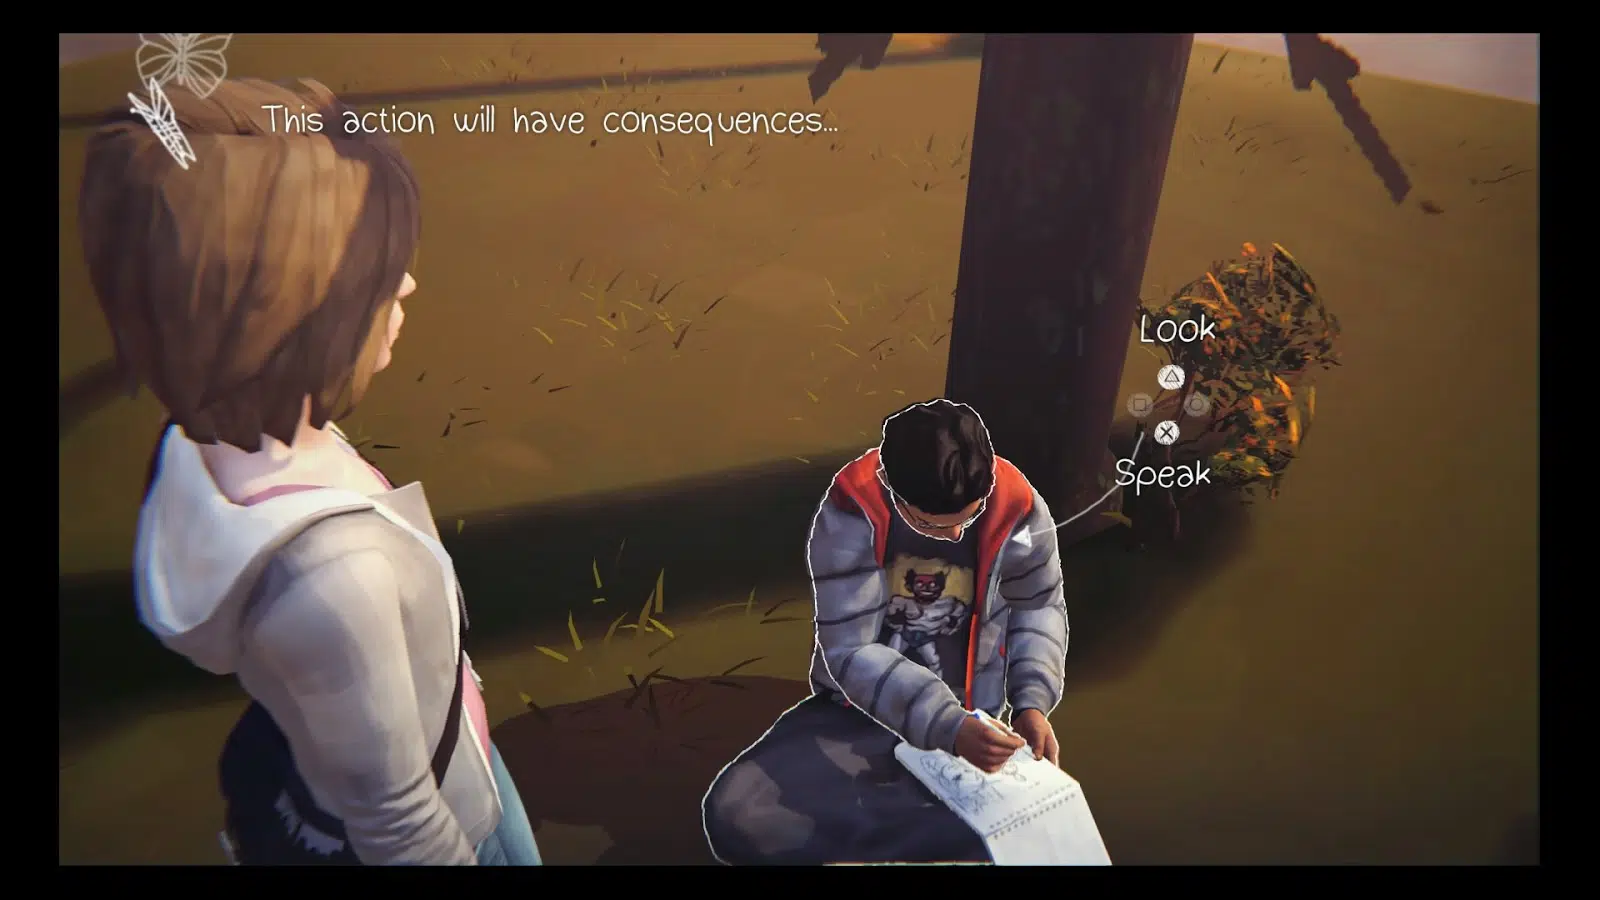 Cena do jogo Life is Strange que mostra a personagem Max olhando de cima para um garoto